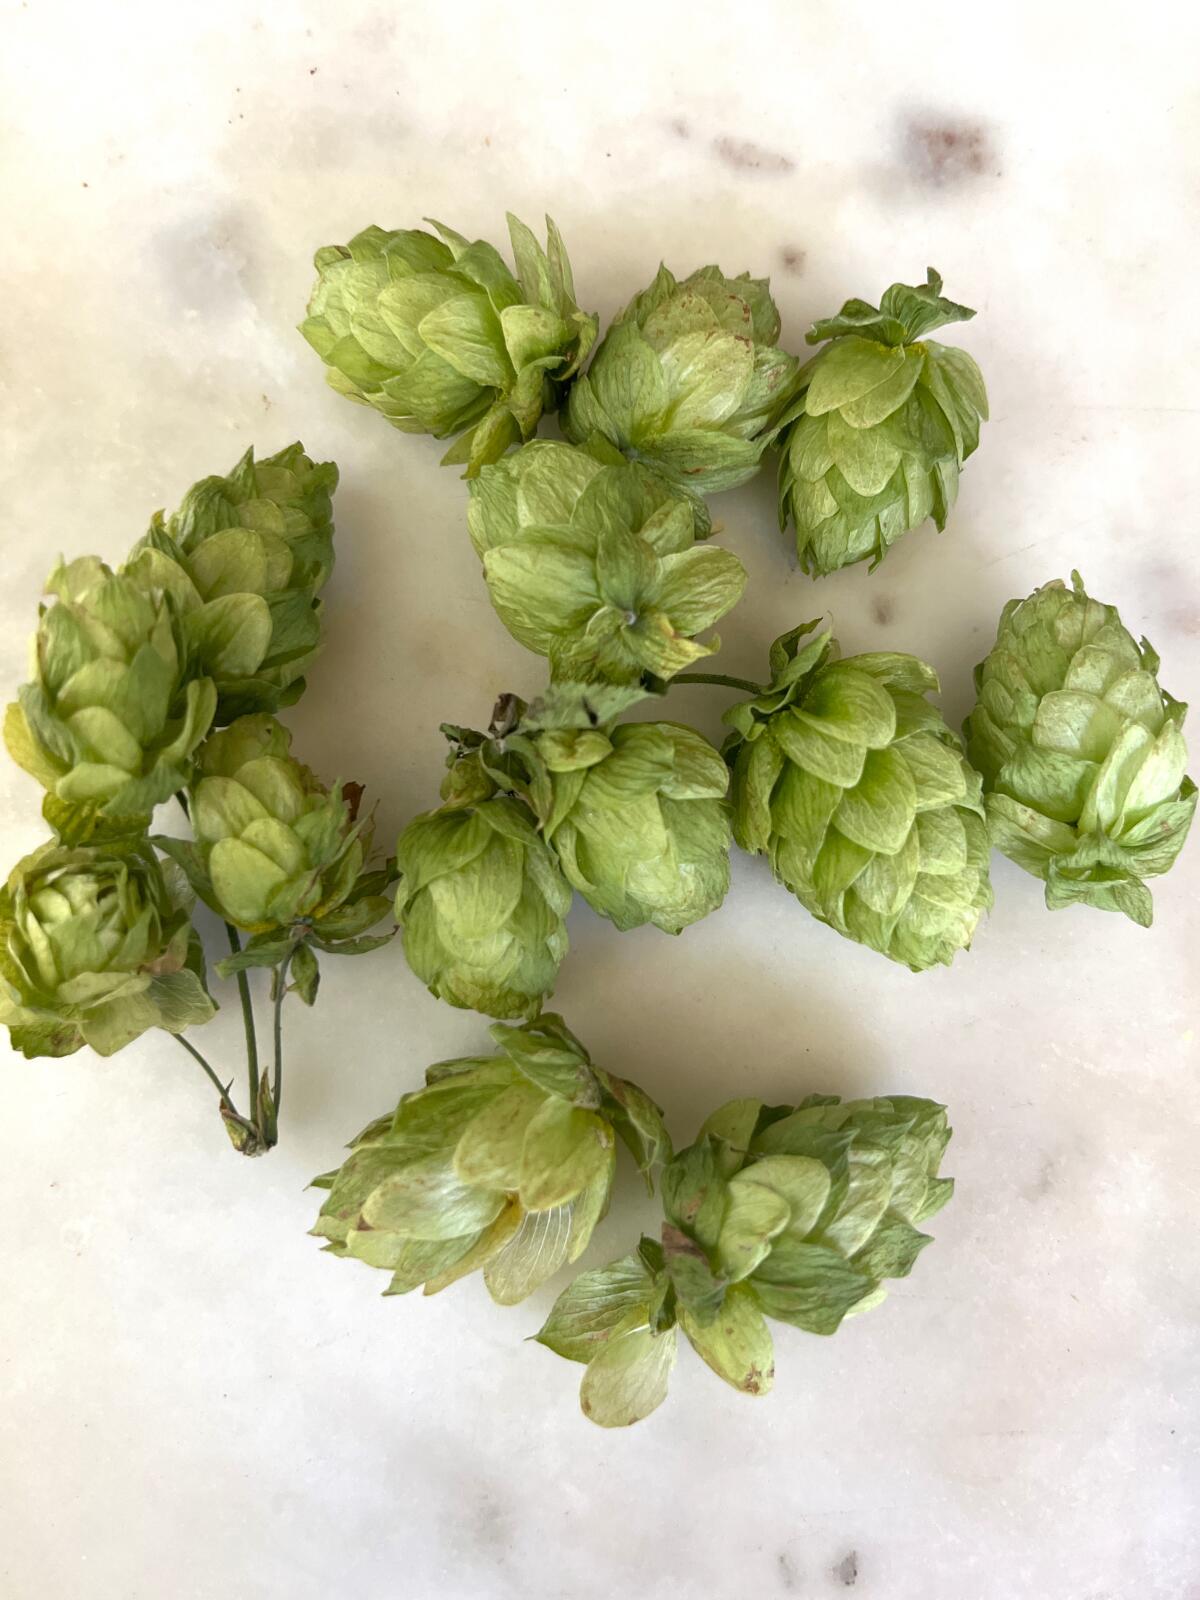 Garden Mastery: Tiny green hop cones thrive in beer